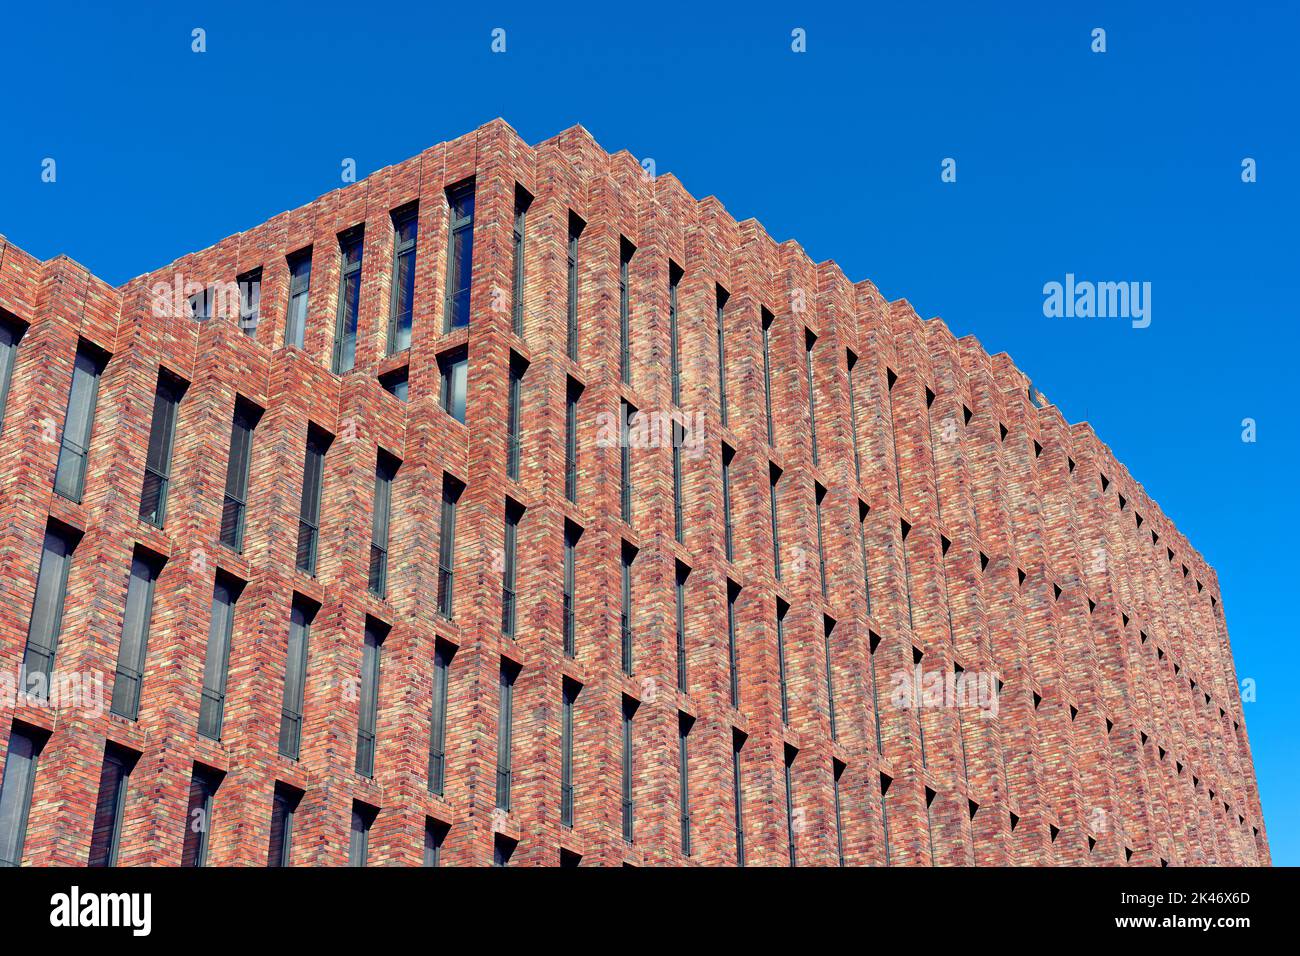 Brick facade under a blue sky Stock Photo